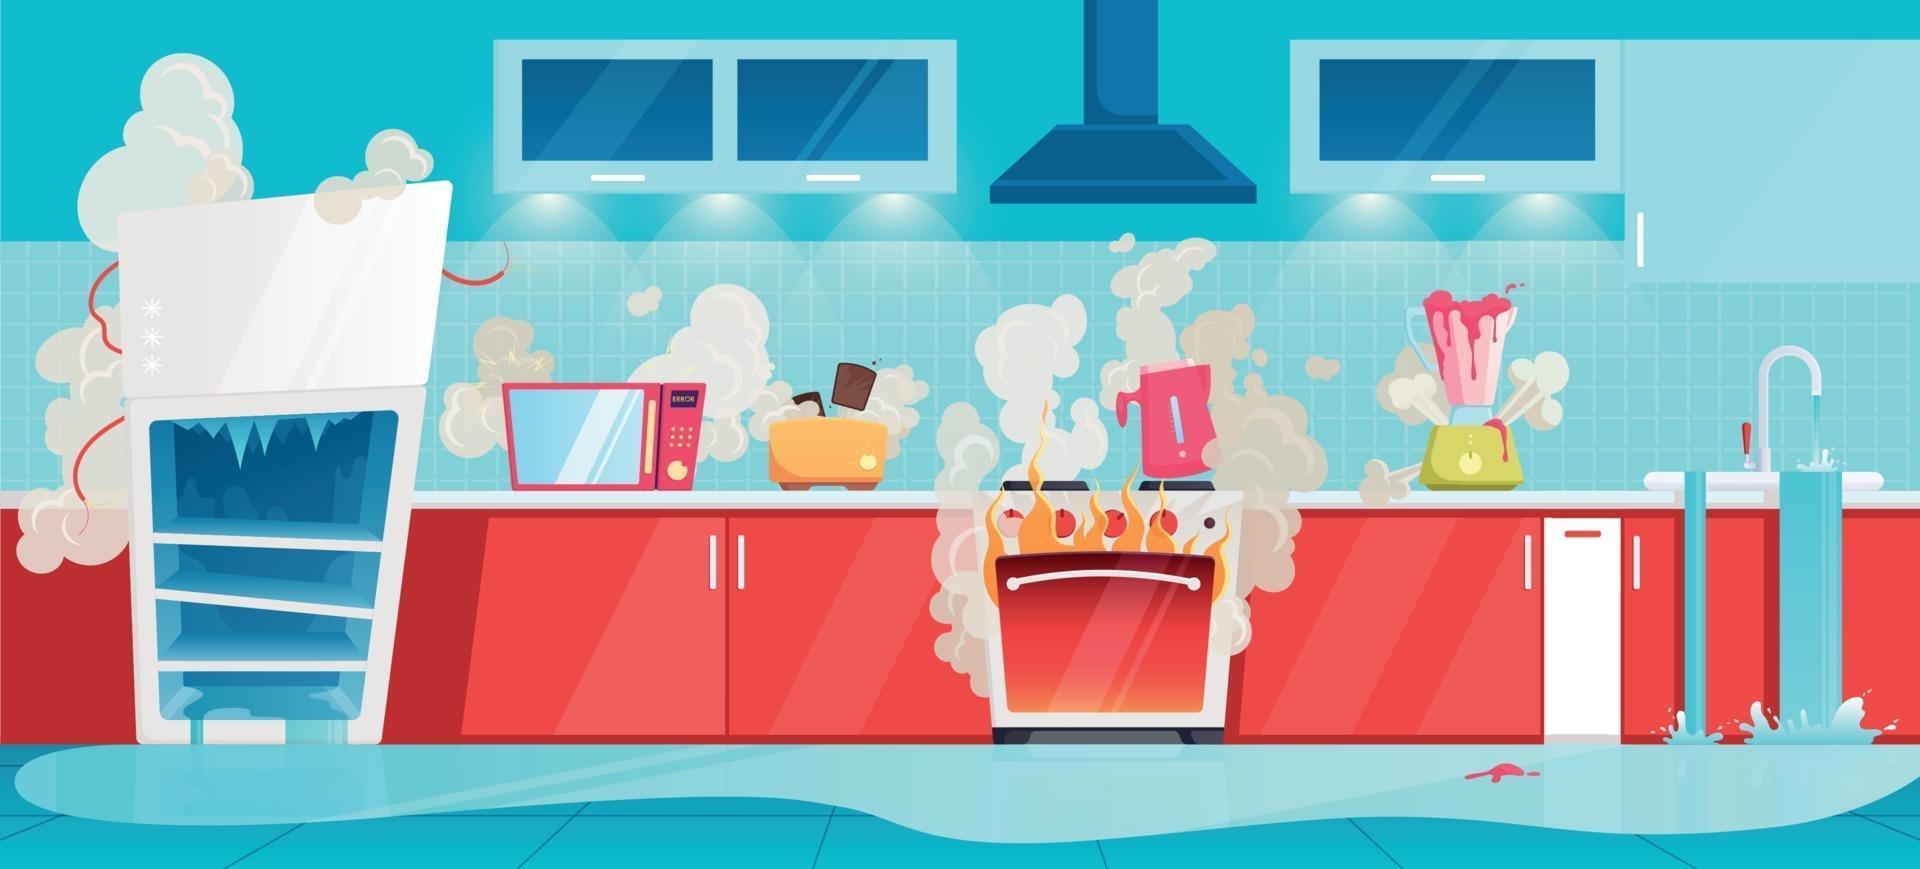 Broken Household Appliances Kitchen Interior Composition vector